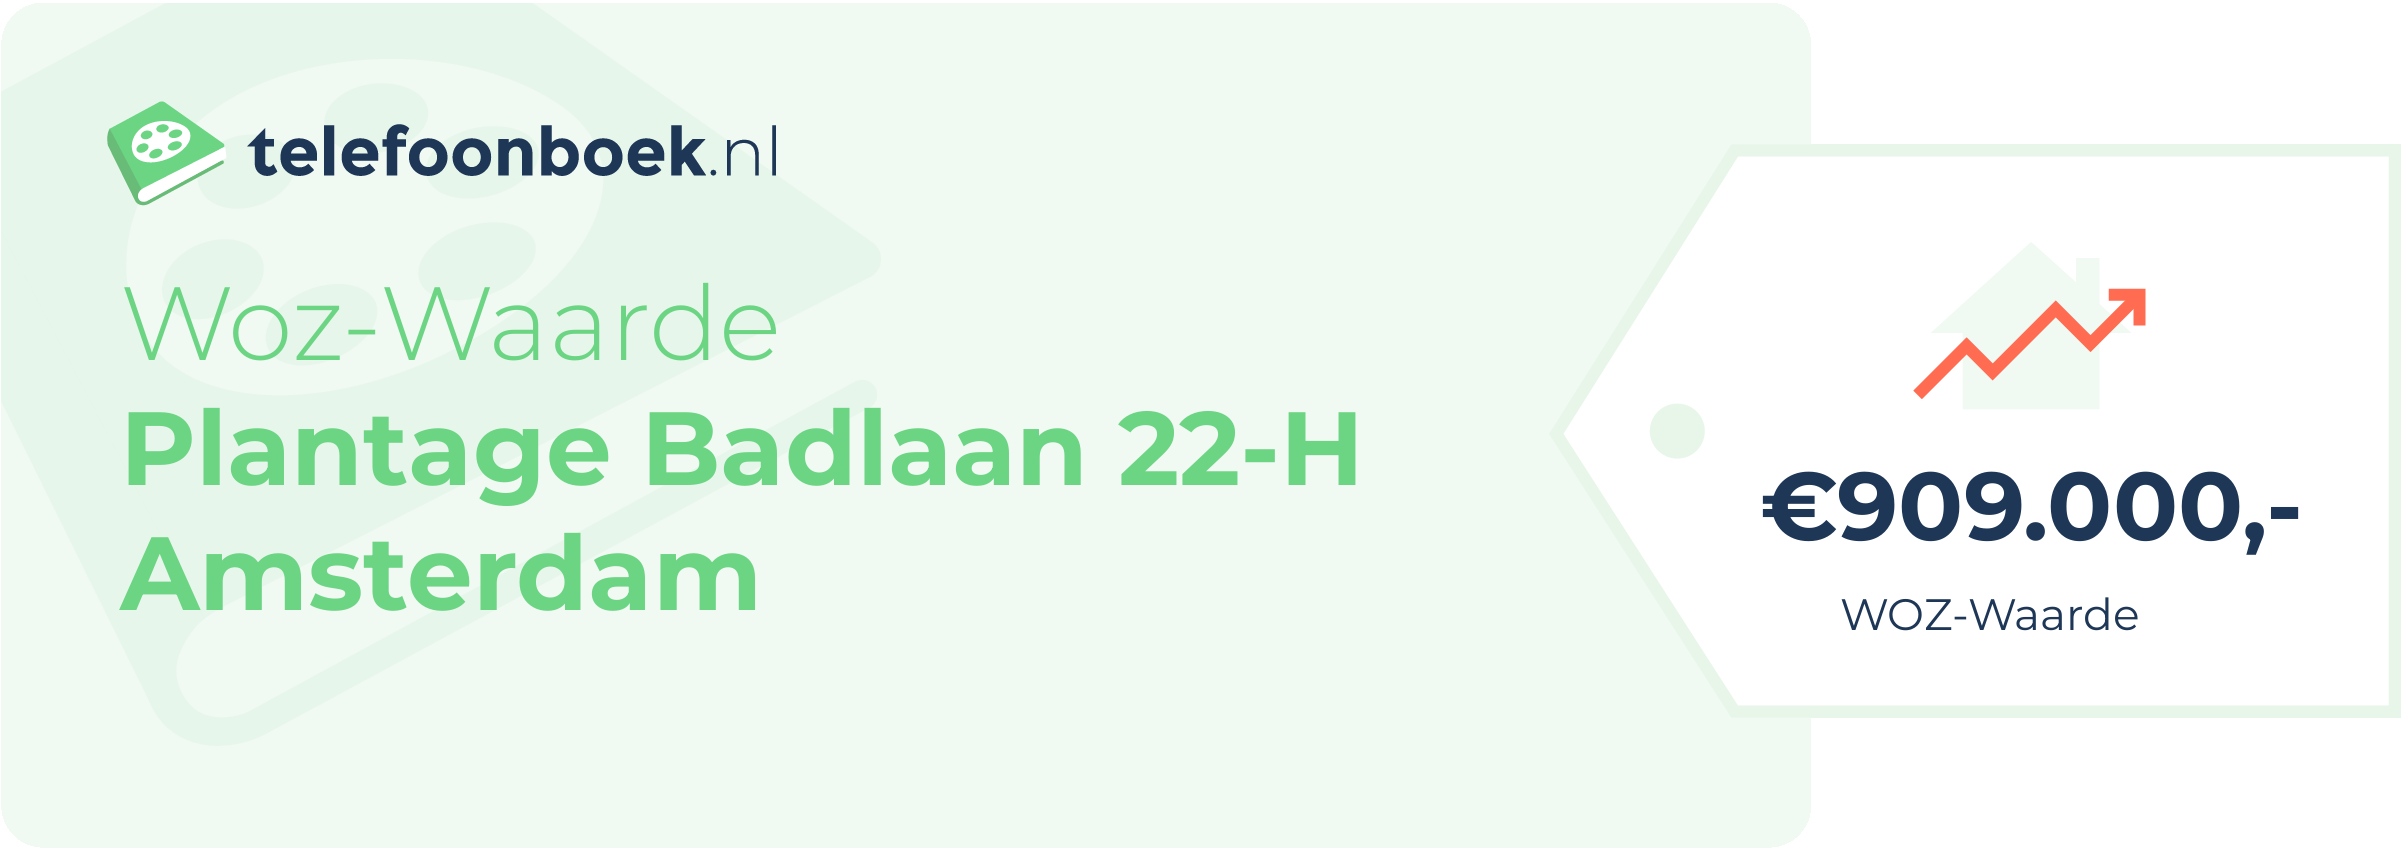 WOZ-waarde Plantage Badlaan 22-H Amsterdam